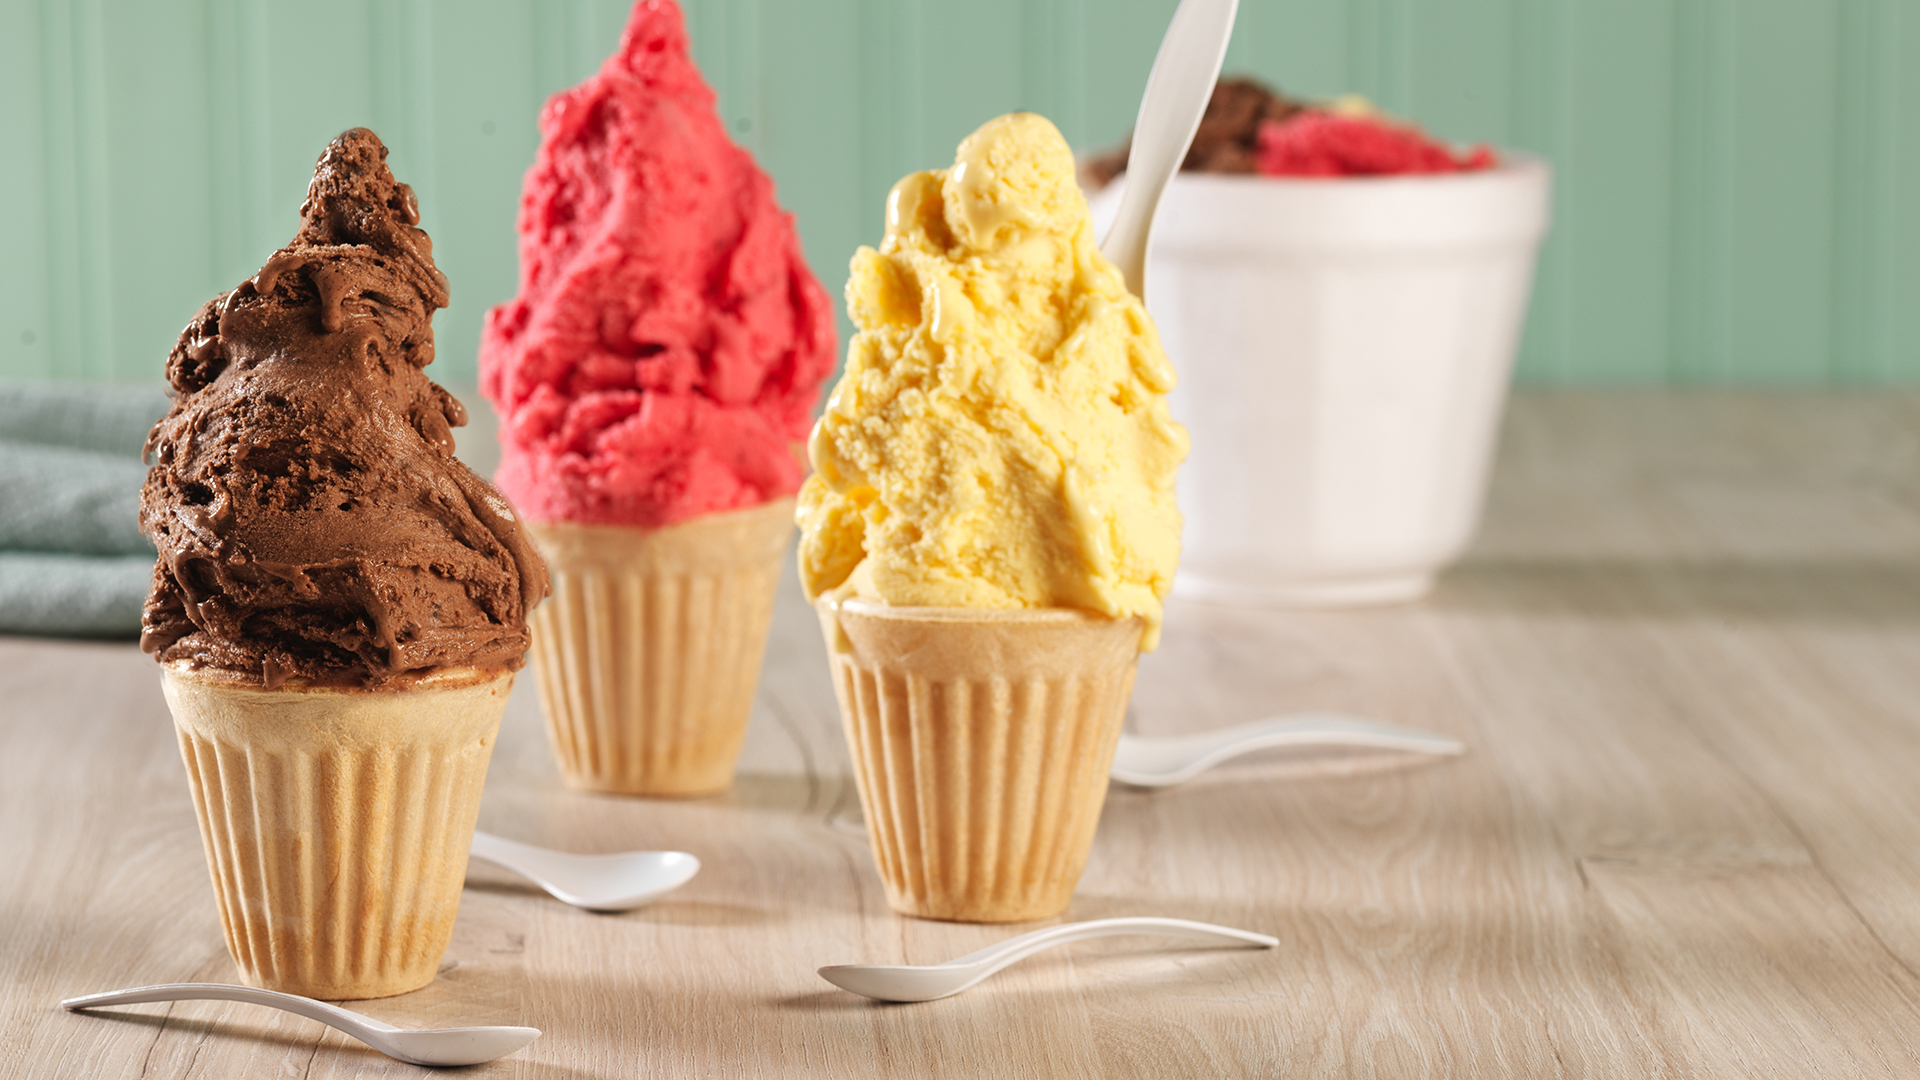 En noviembre, Pozo viajará a Italia por primera vez a participar en el mundial de helados